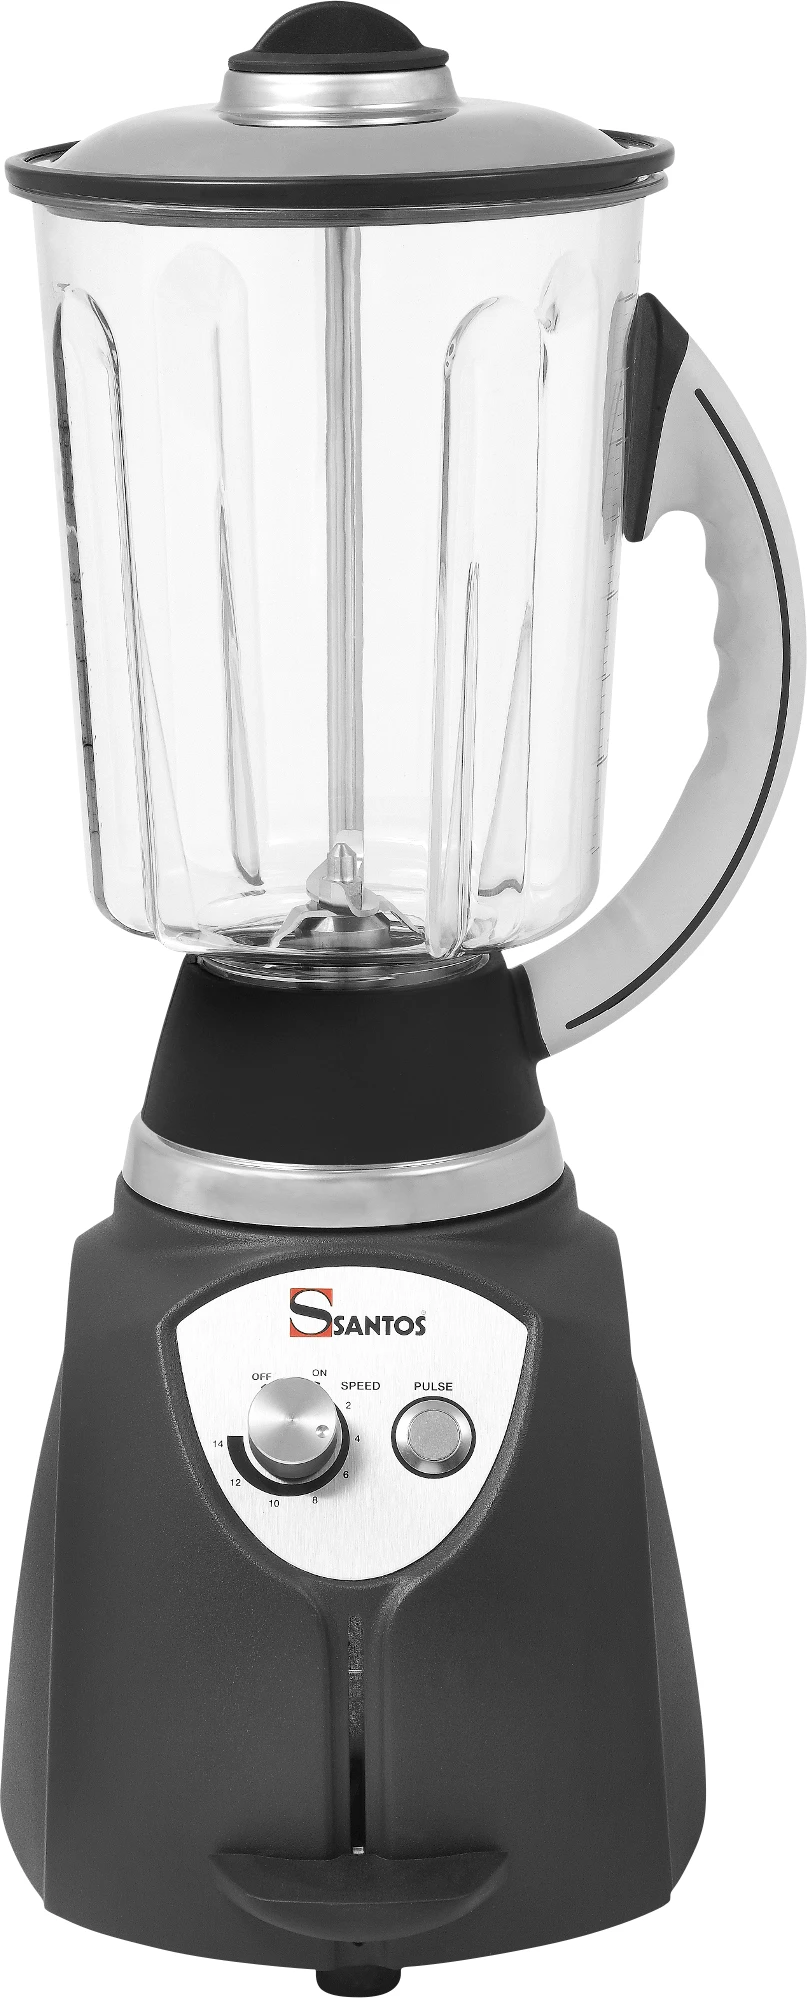 Santos 37 4P blender